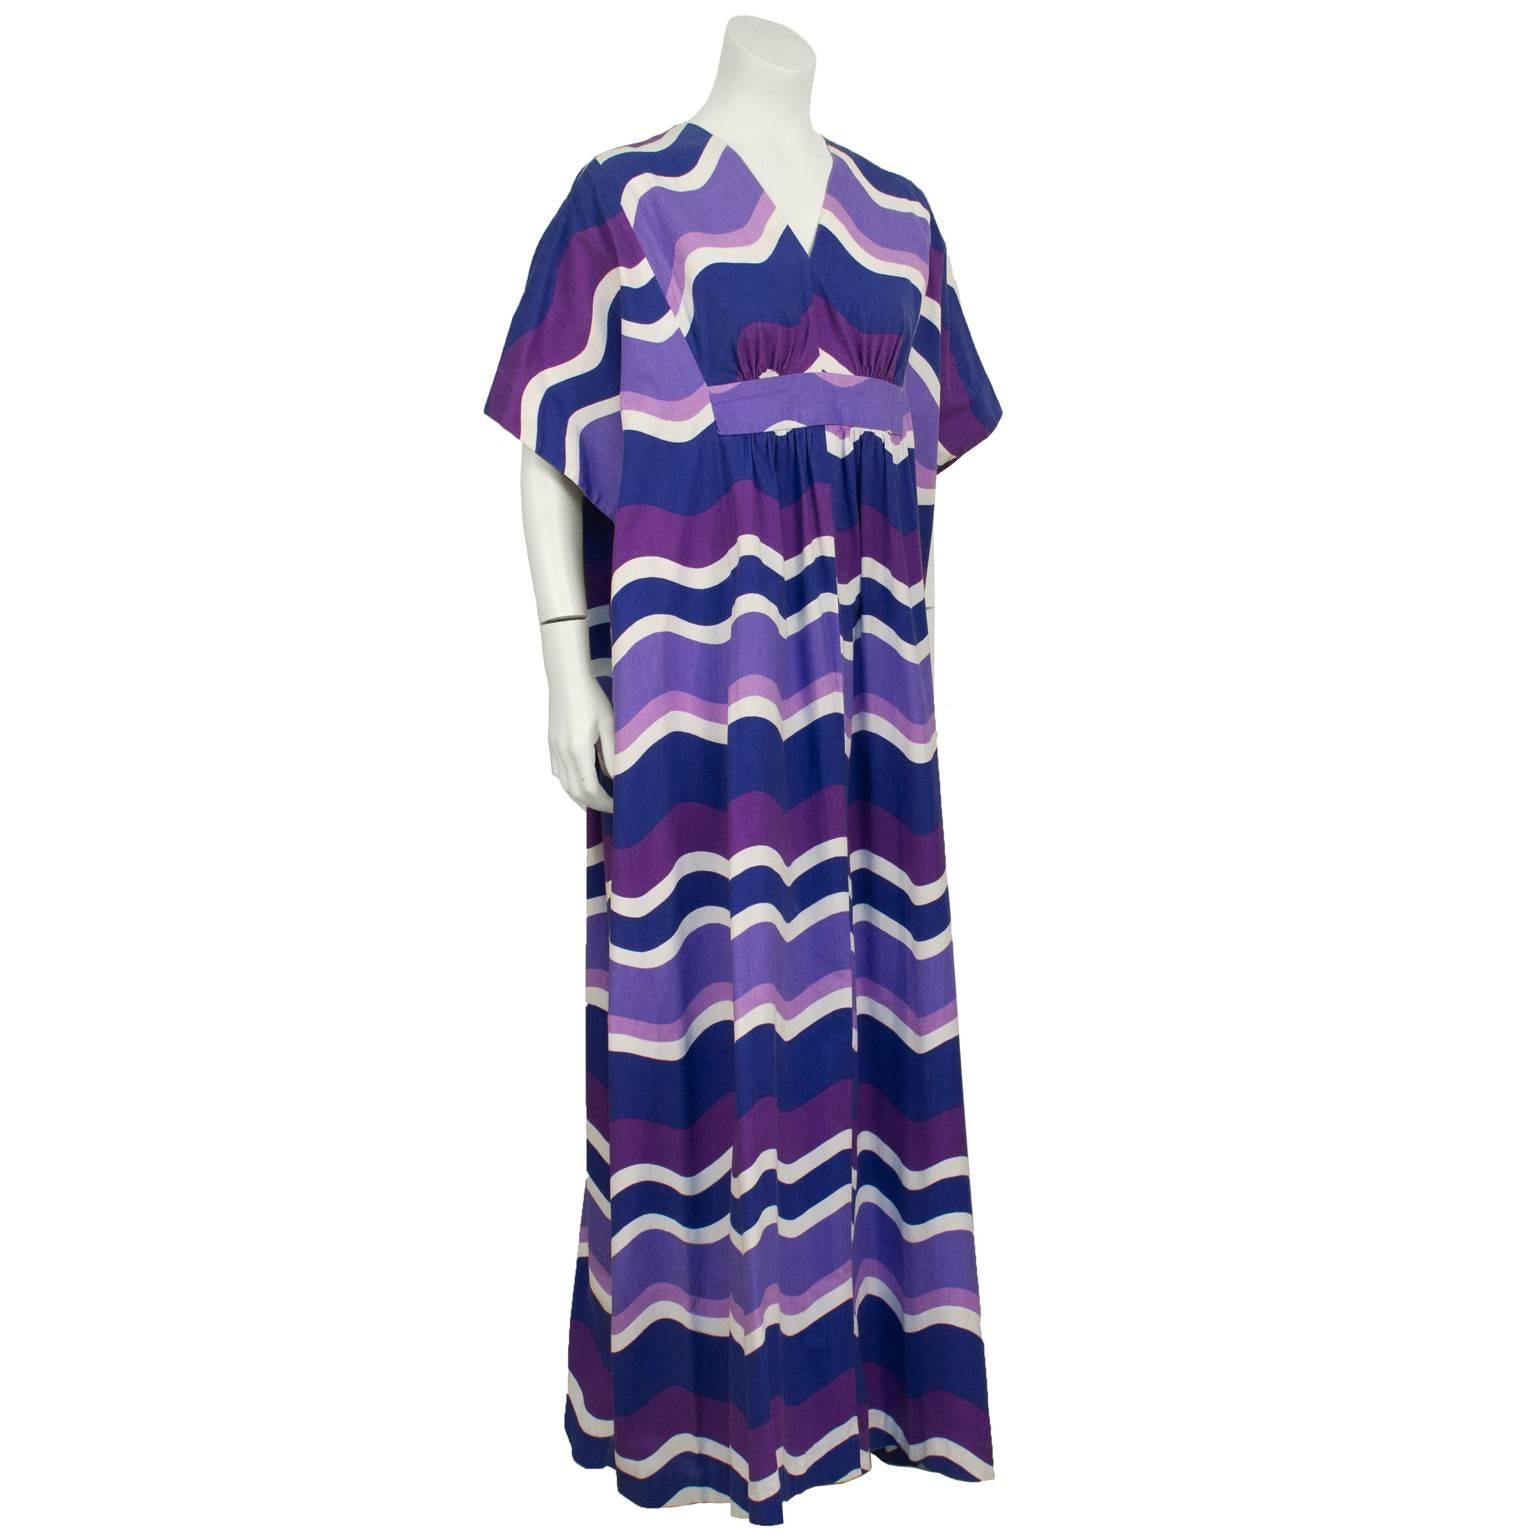 Anonymer Baumwollkaftan im Bohème-Stil der 1970er Jahre mit mehrfarbigem lila und weißem Wellenmuster. Das Kleid hat einen V-Ausschnitt und eine leicht gerüschte Brust mit einem versteckten Empire-Taillenband, das unter dem Kleid und am Rücken